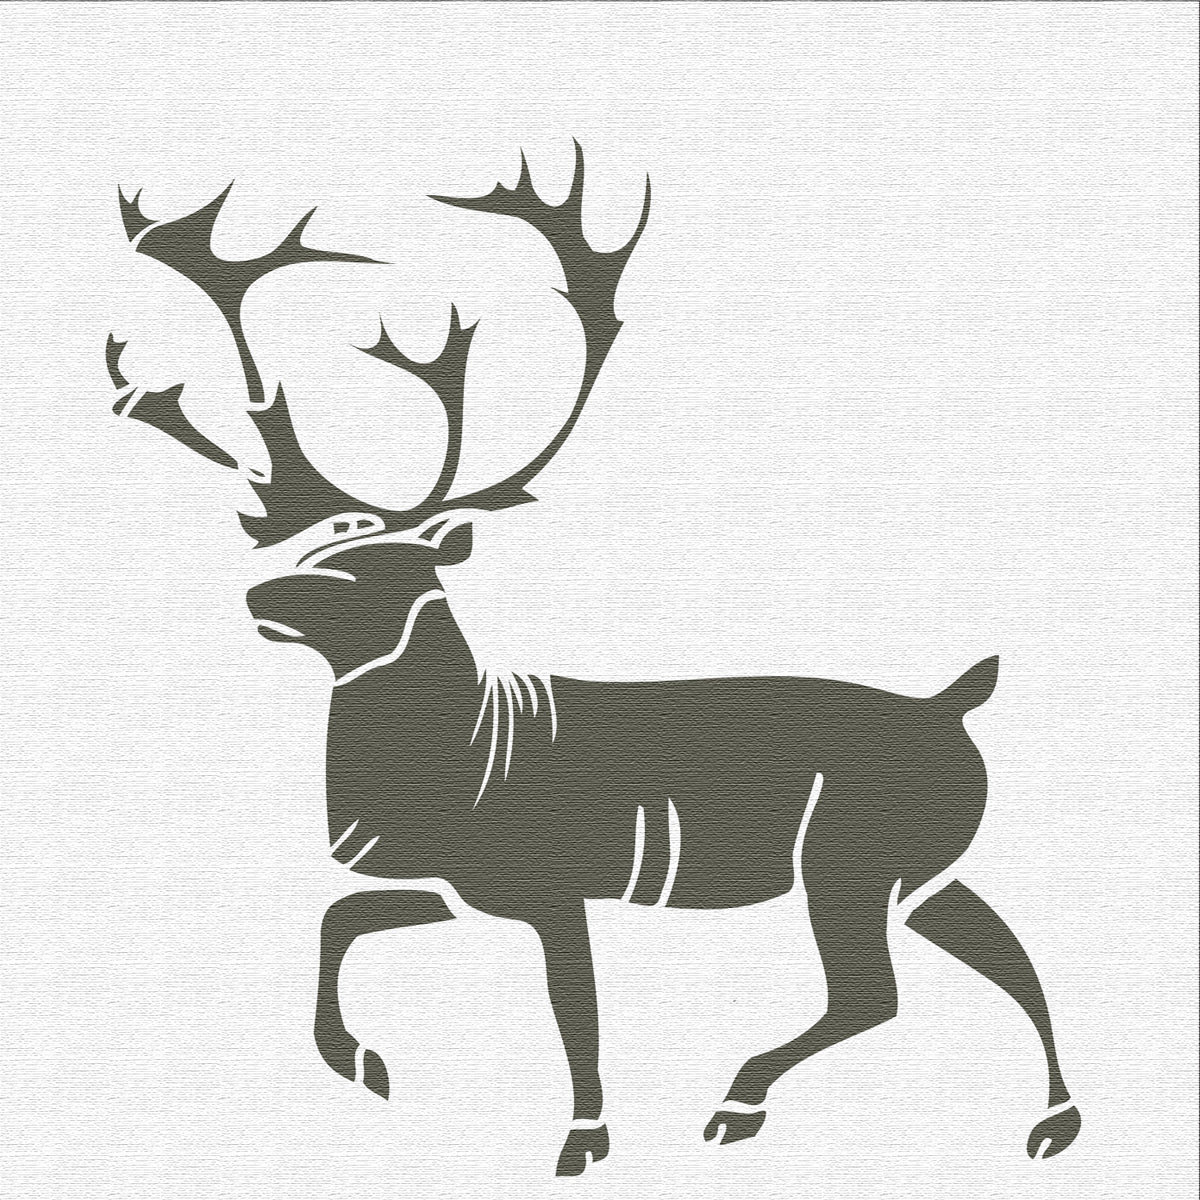 Designer Stencils Buck Mount and Antlers Stencil and Free Bonus Stencil